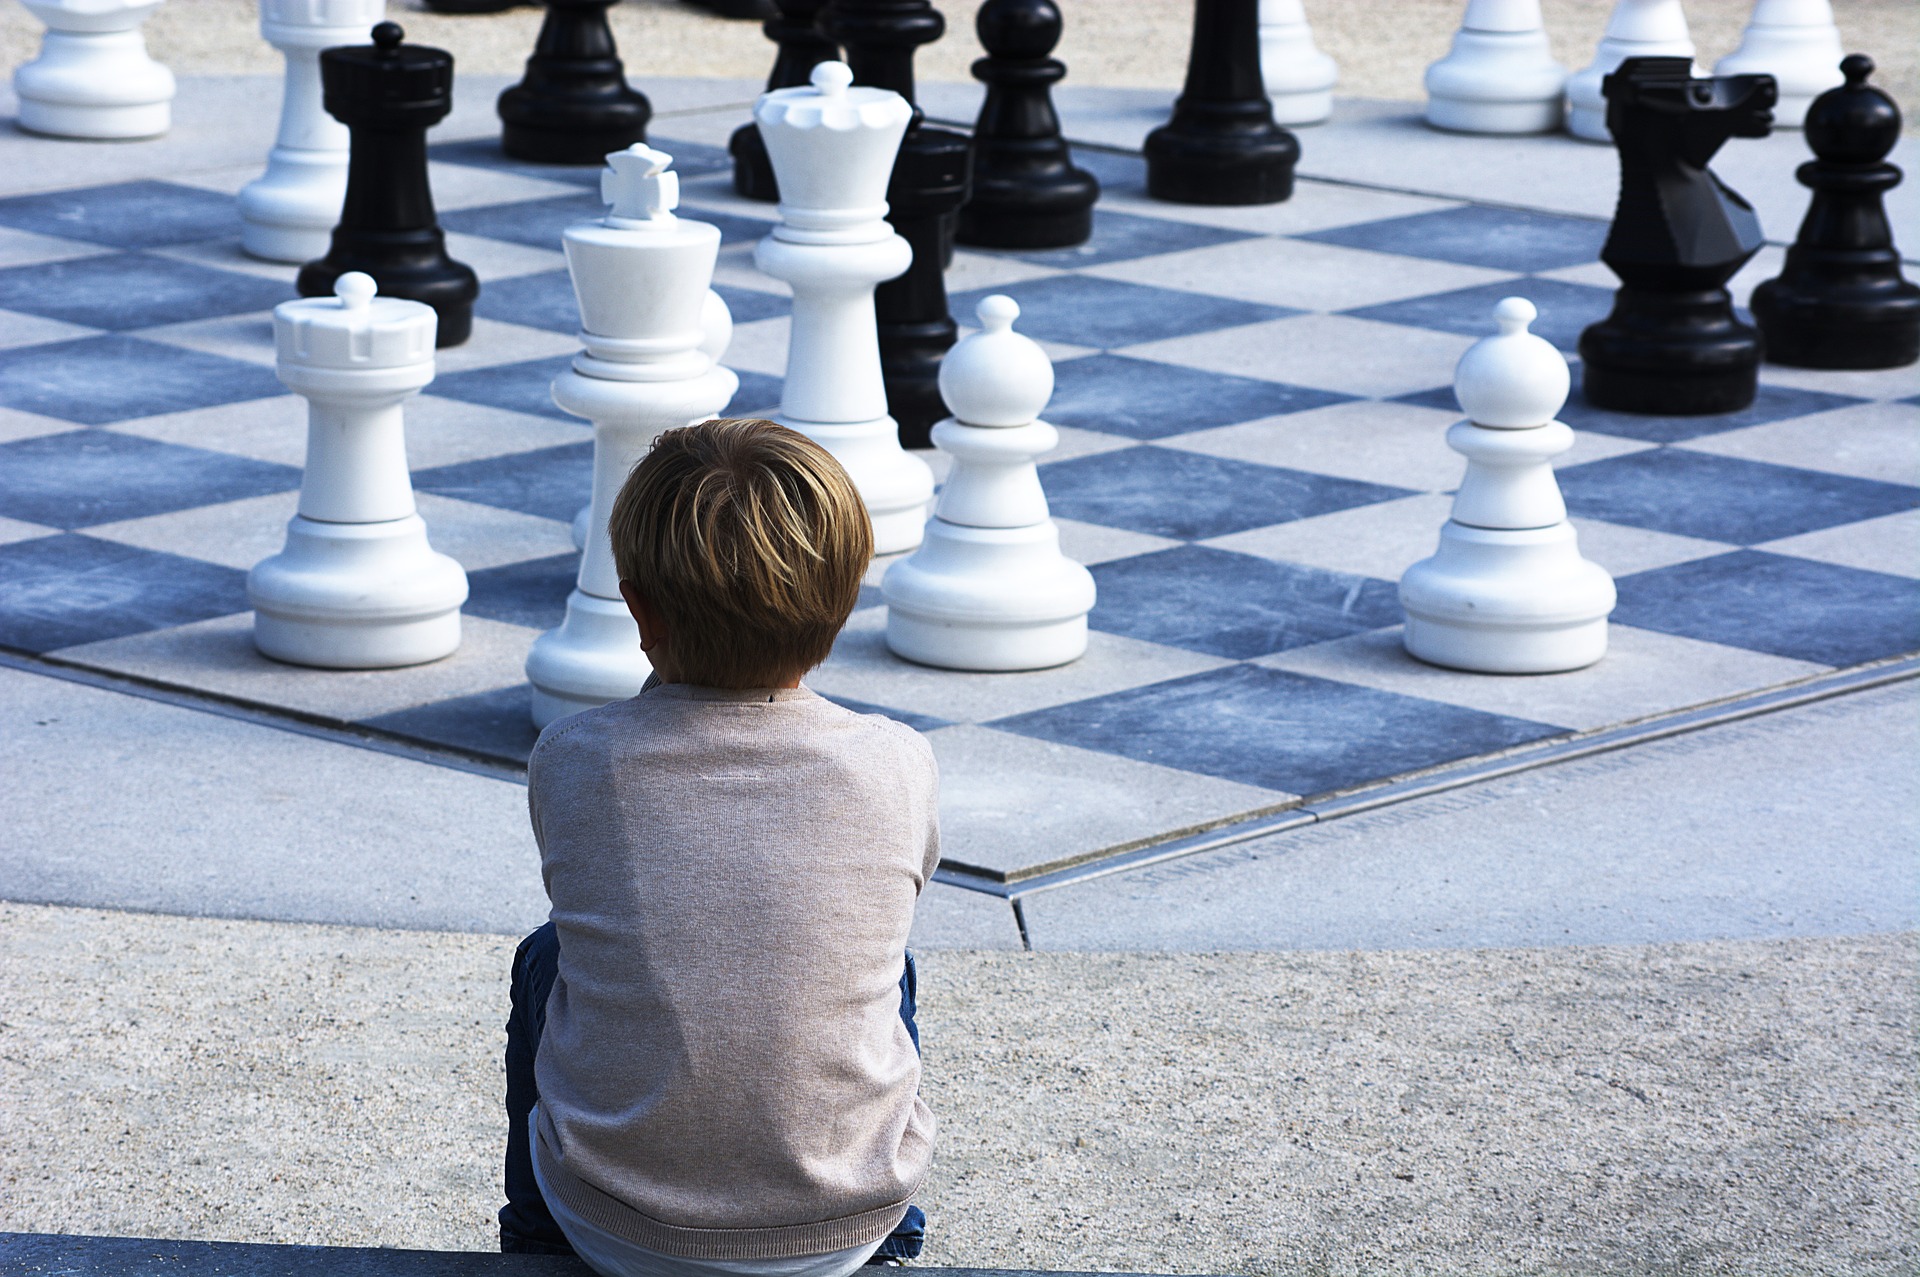 Chess Openings by Example: Alekhine Defense eBook by J. Schmidt